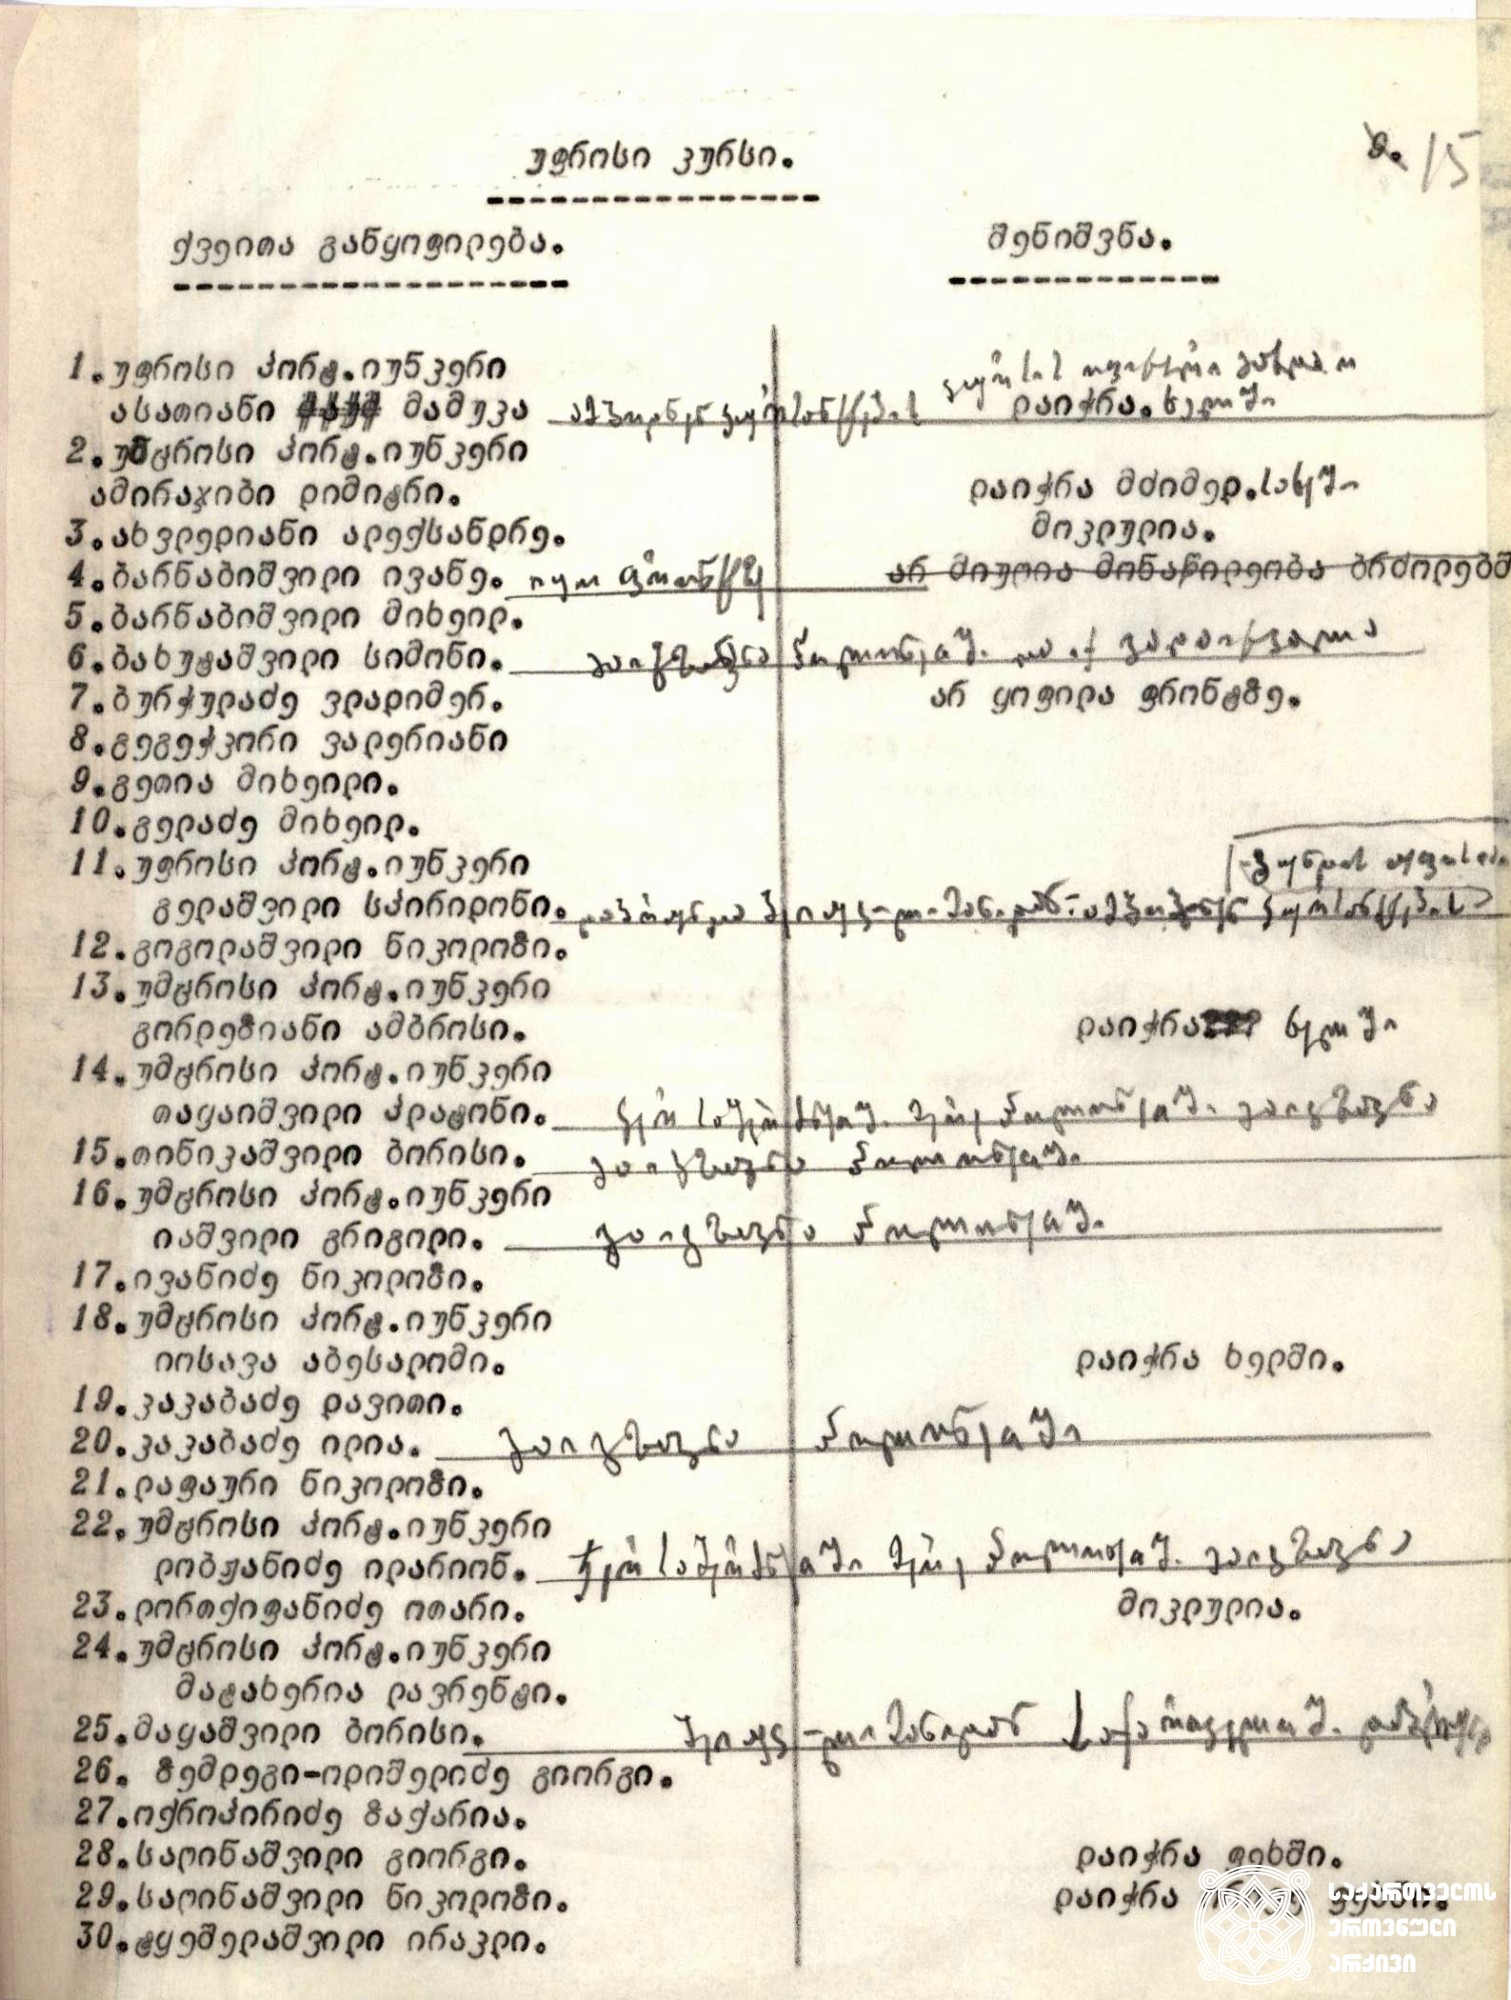 რუსეთ-საქართველოს 1921 წლის ომში მონაწილე უფროსი კურსის იუნკერთა სიის ნაწილი. <br>

სიაში ჩამოთვლილთაგან ალექსანდრე ახვლედიანი და ოთარ ლორთქიფანიძე ბრძოლაში დაიღუპნენ, ნაწილმა კი სხვადასხვა სახის ჭრილობა მიიღო. 
<br>

Part of the list with the names of senior course Junkers, participating in Russian-Georgian war in 1921. <br>

From the listed Alexander Akhvlediani and Otar Lortkipanidze died in battle, others had different types of injuries.